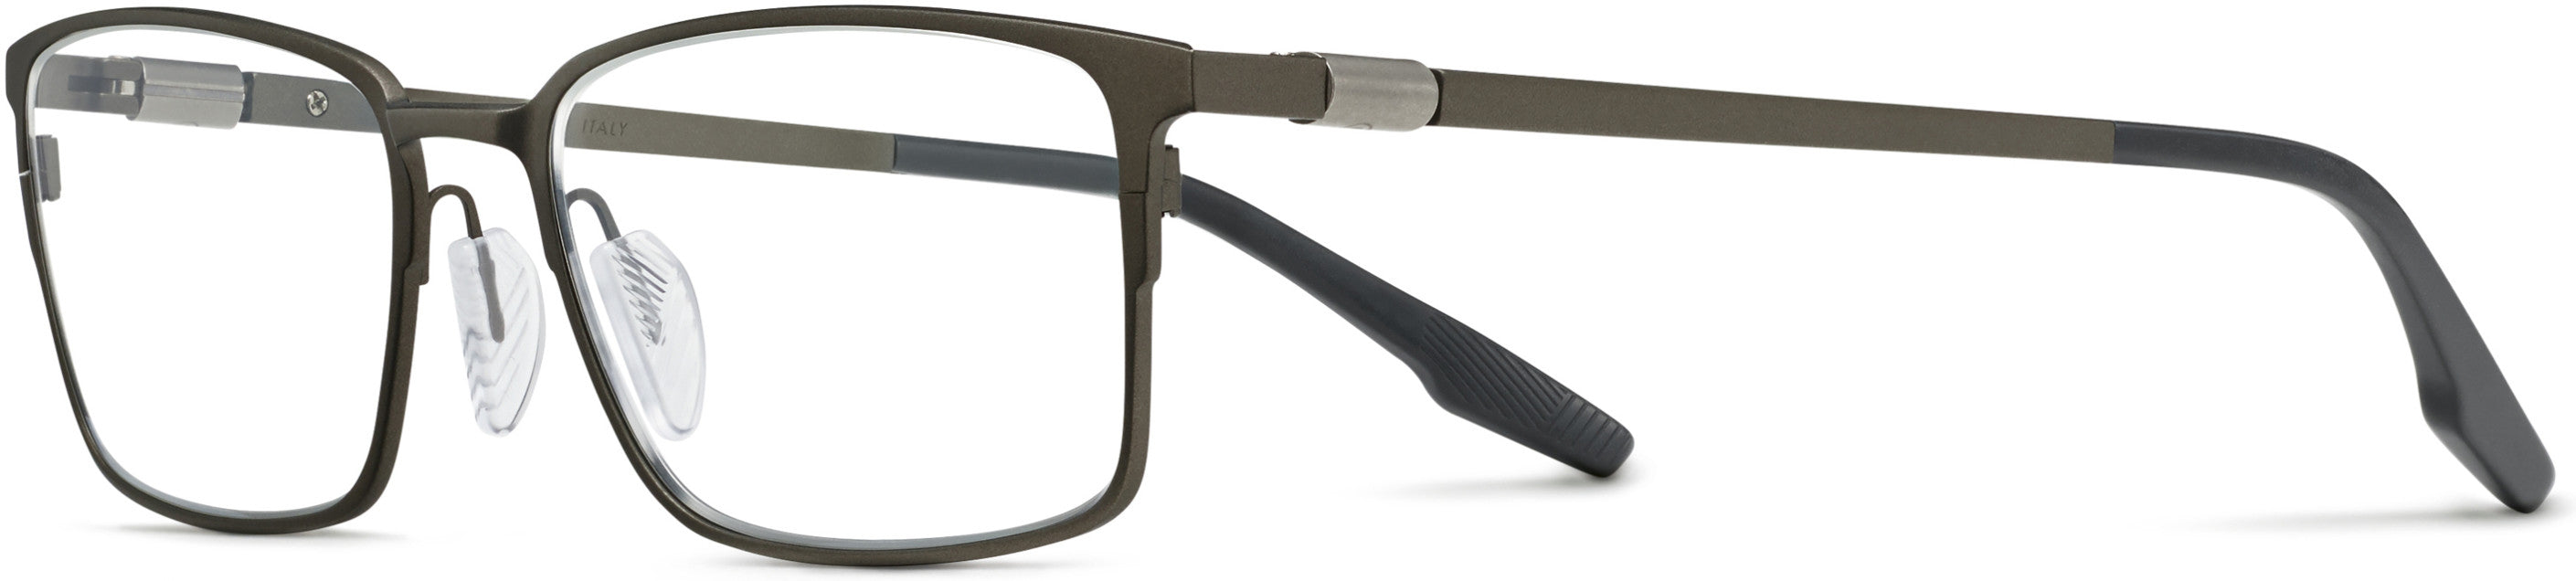 Safilo 2.0 Bussola 02 Rectangular Eyeglasses 0FRE-0FRE  Matte Gray (00 Demo Lens)